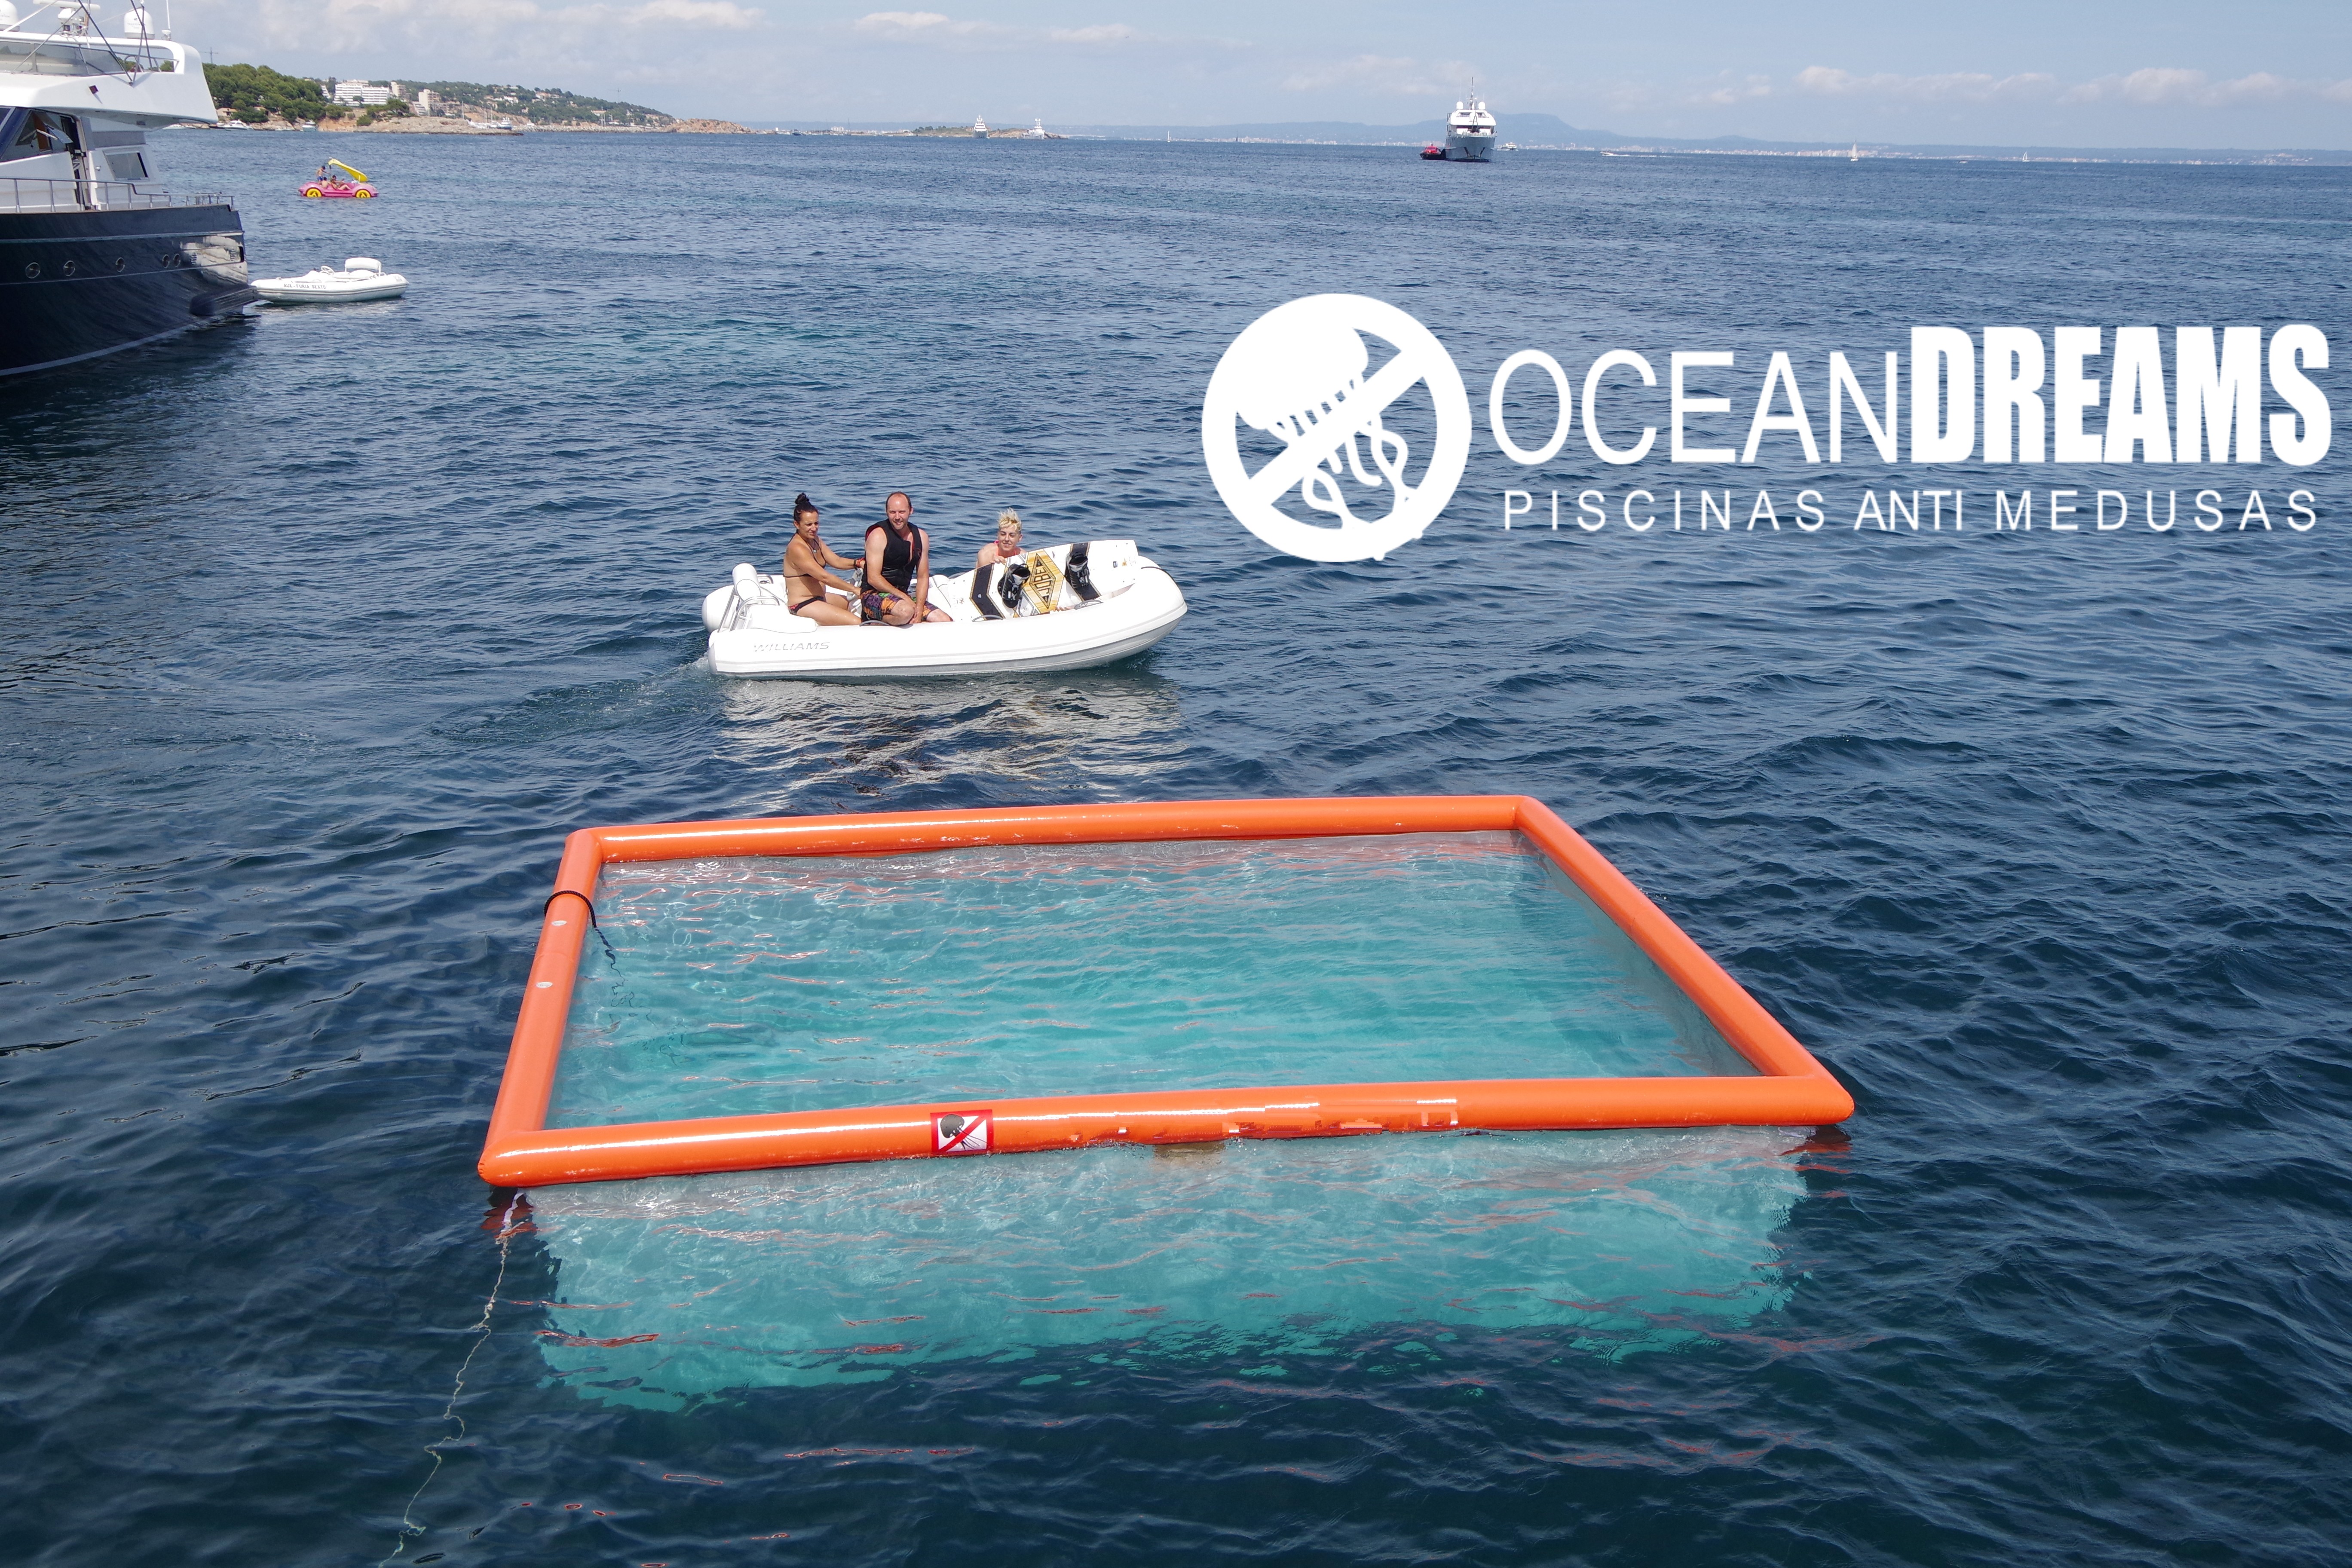 piscina hinchable OceanDreams protege contra las picaduras de las medusas